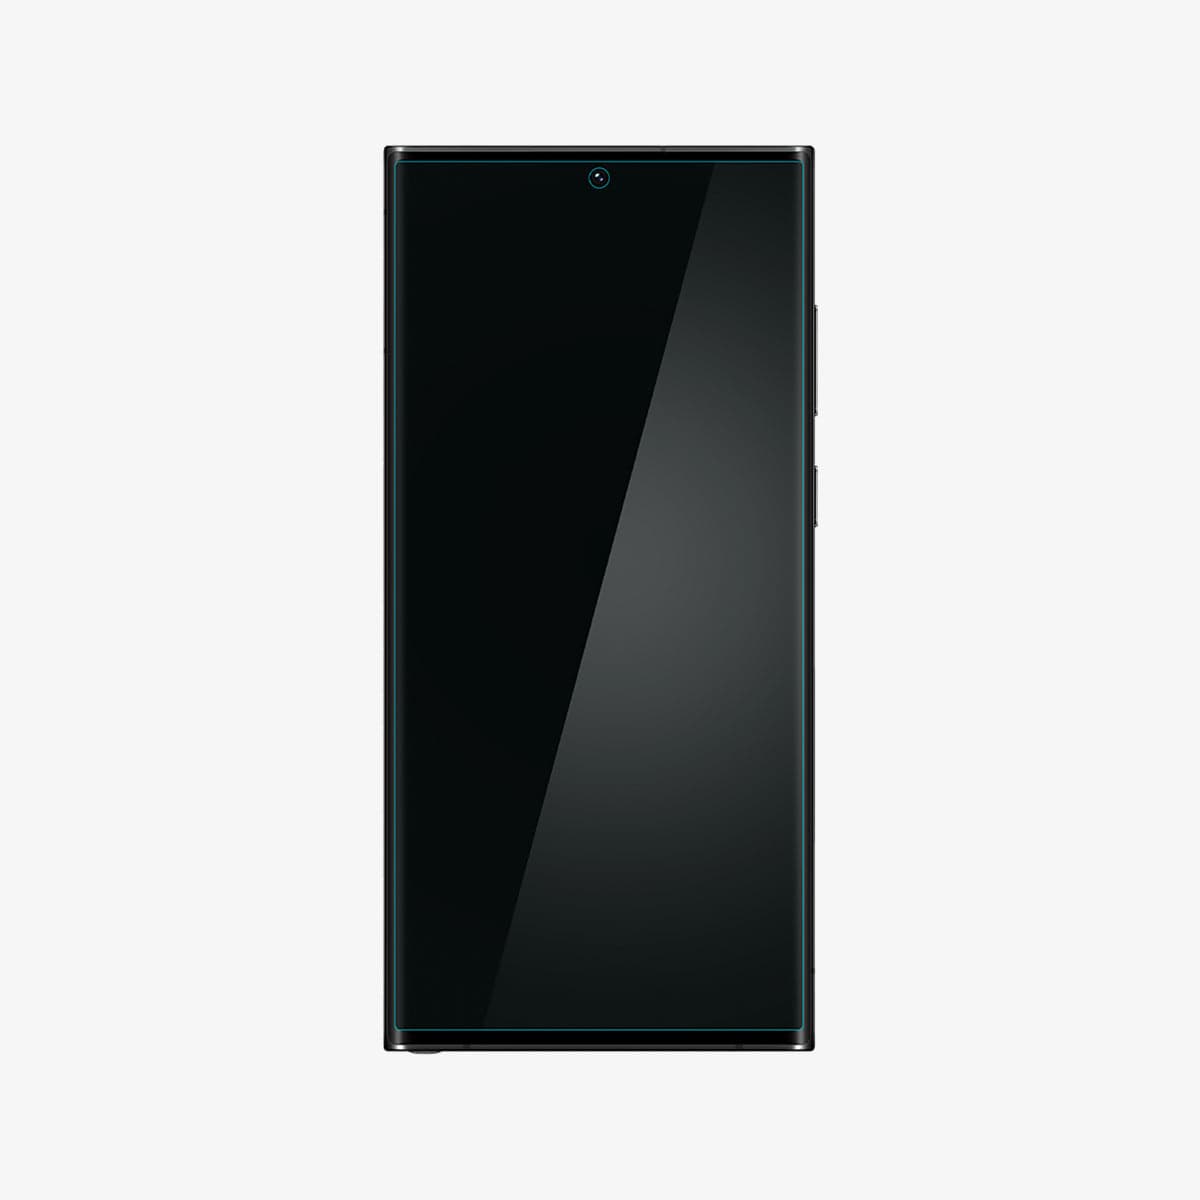 Spigen Neo Flex Screen Protector For Samsung Galaxy S21 Ultra 5G  ,Self-Healing Technology, AFL02533, Transparent - Shopkees